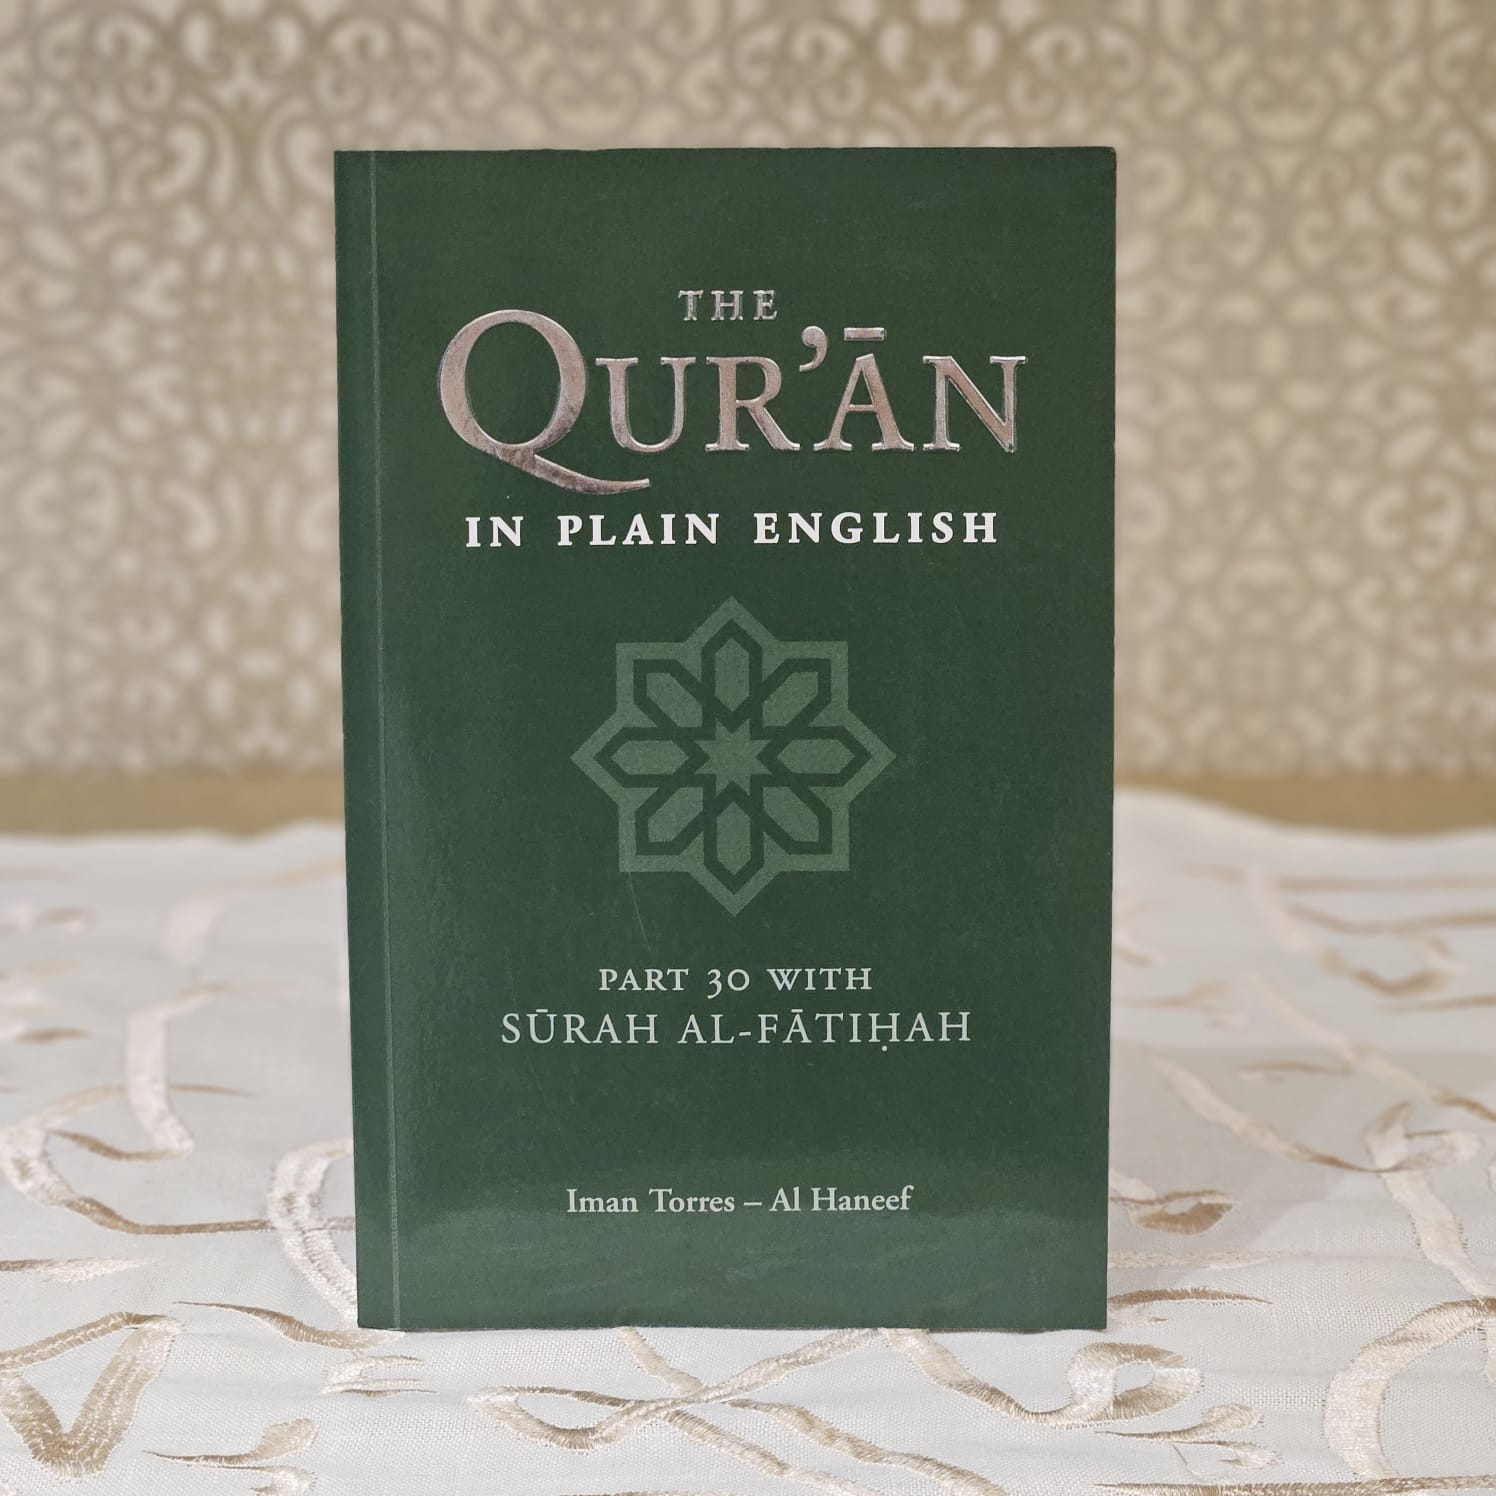 The Qur'an in Plain English - Part 30